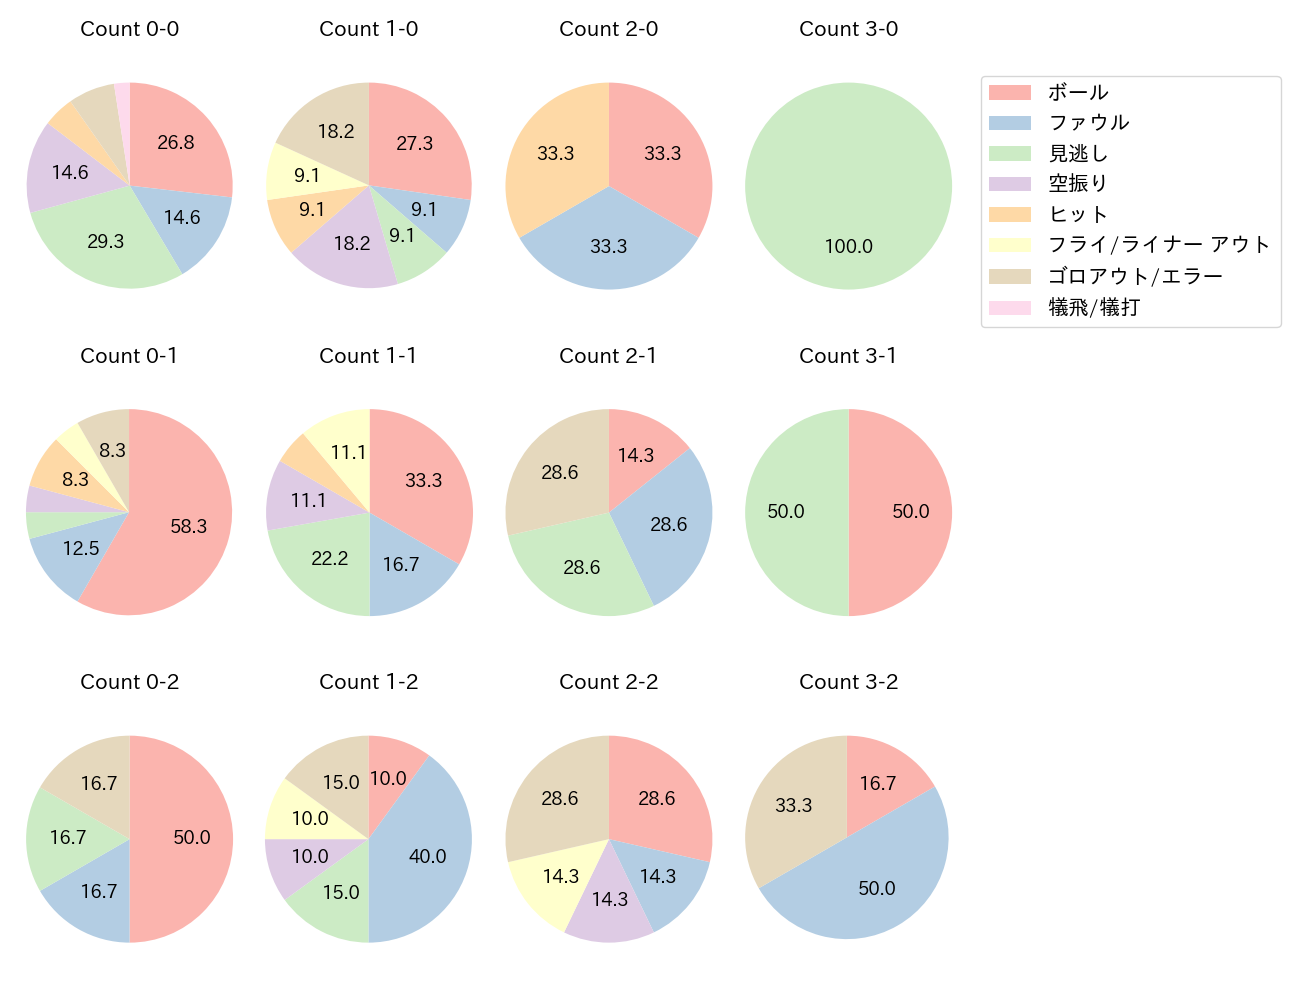 太田 賢吾の球数分布(2022年5月)